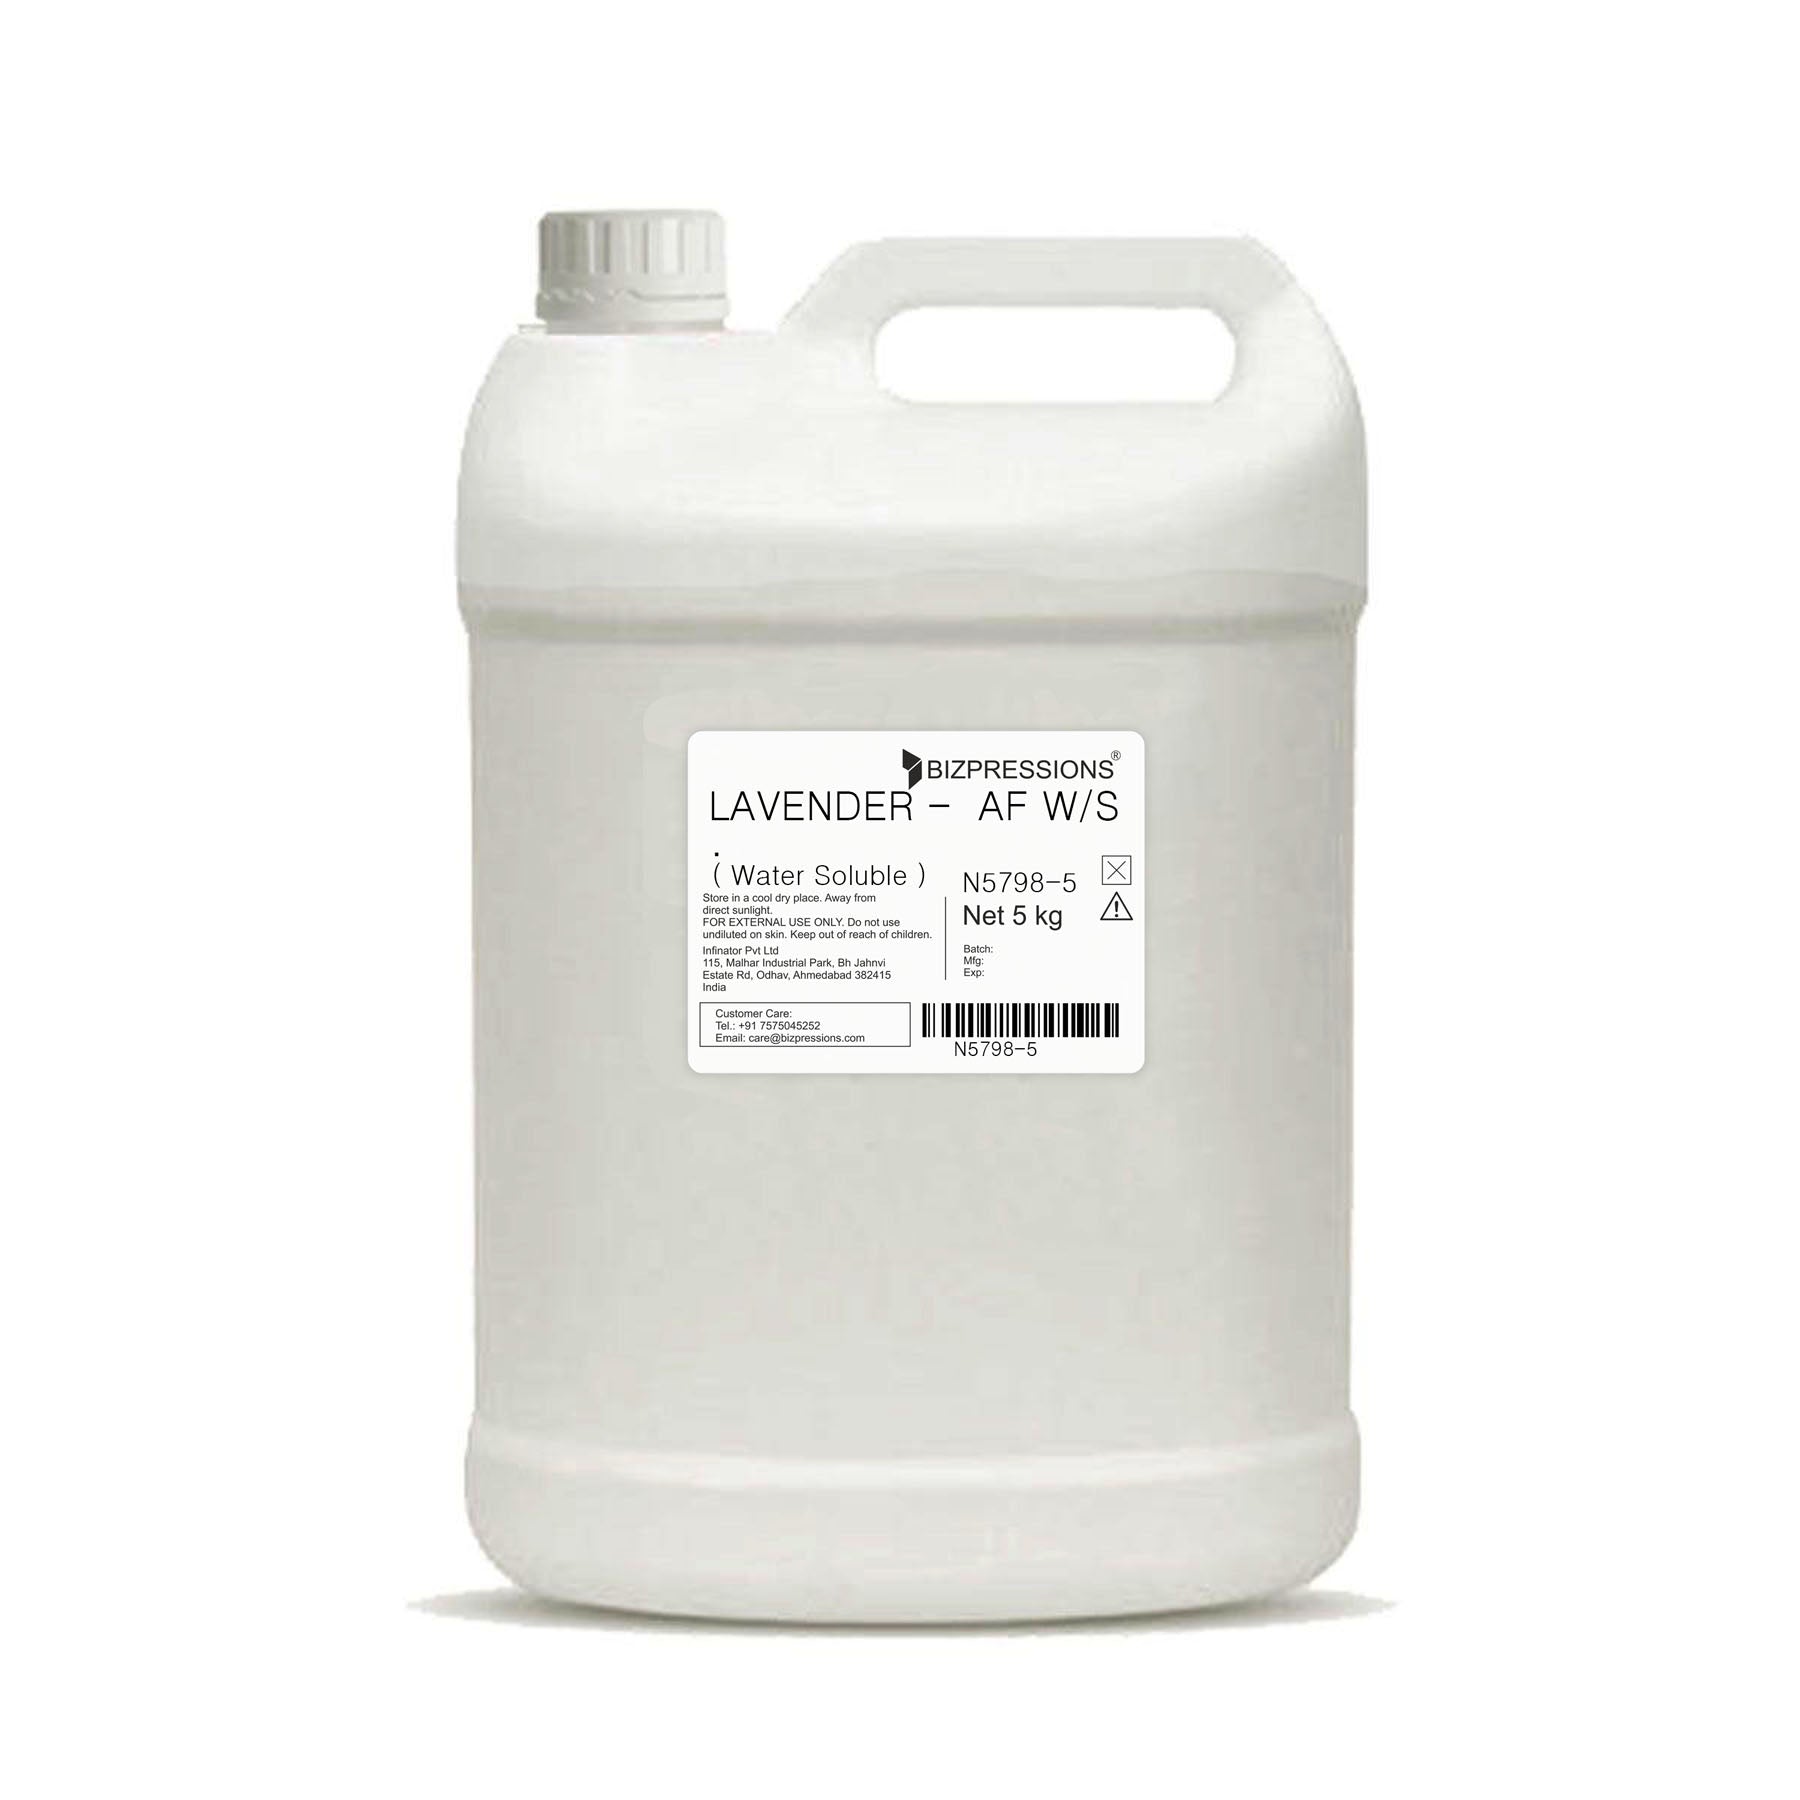 LAVENDER - AF W/S - Fragrance ( Water Soluble ) - 5 kg